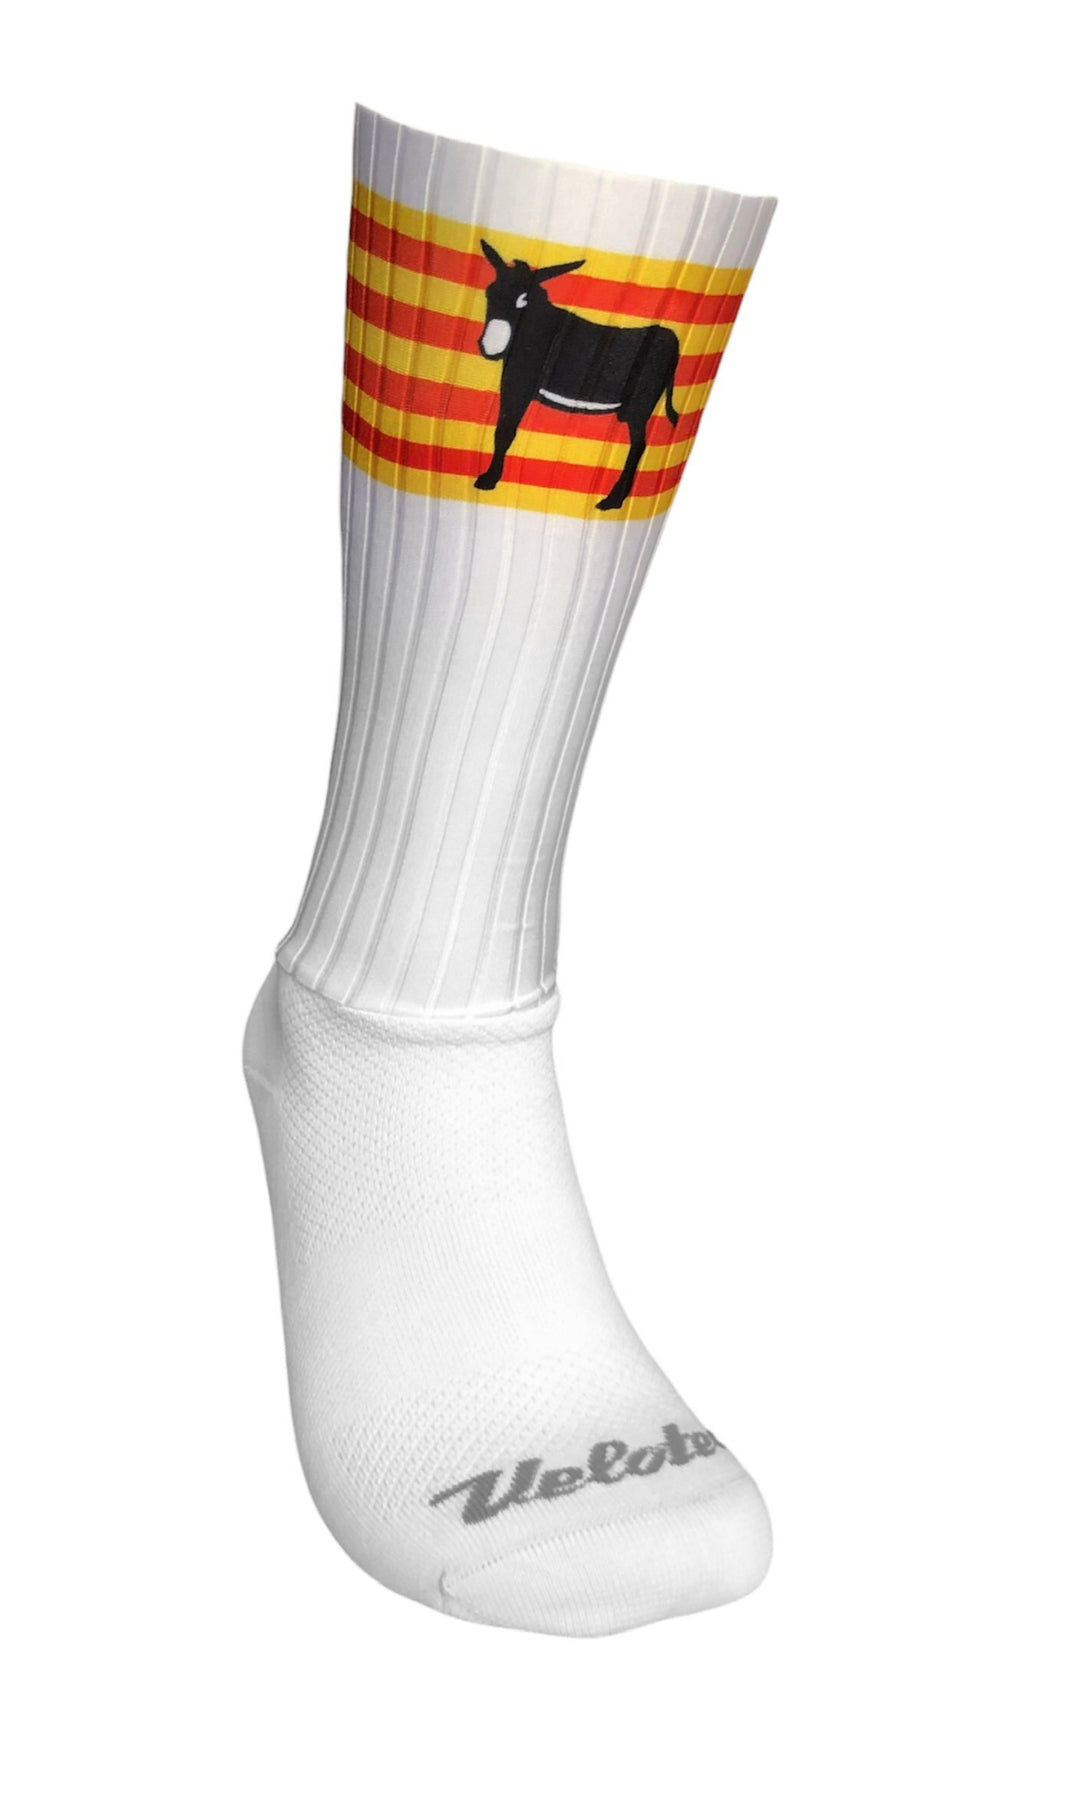 Aero-socks 2.0 Catalunya